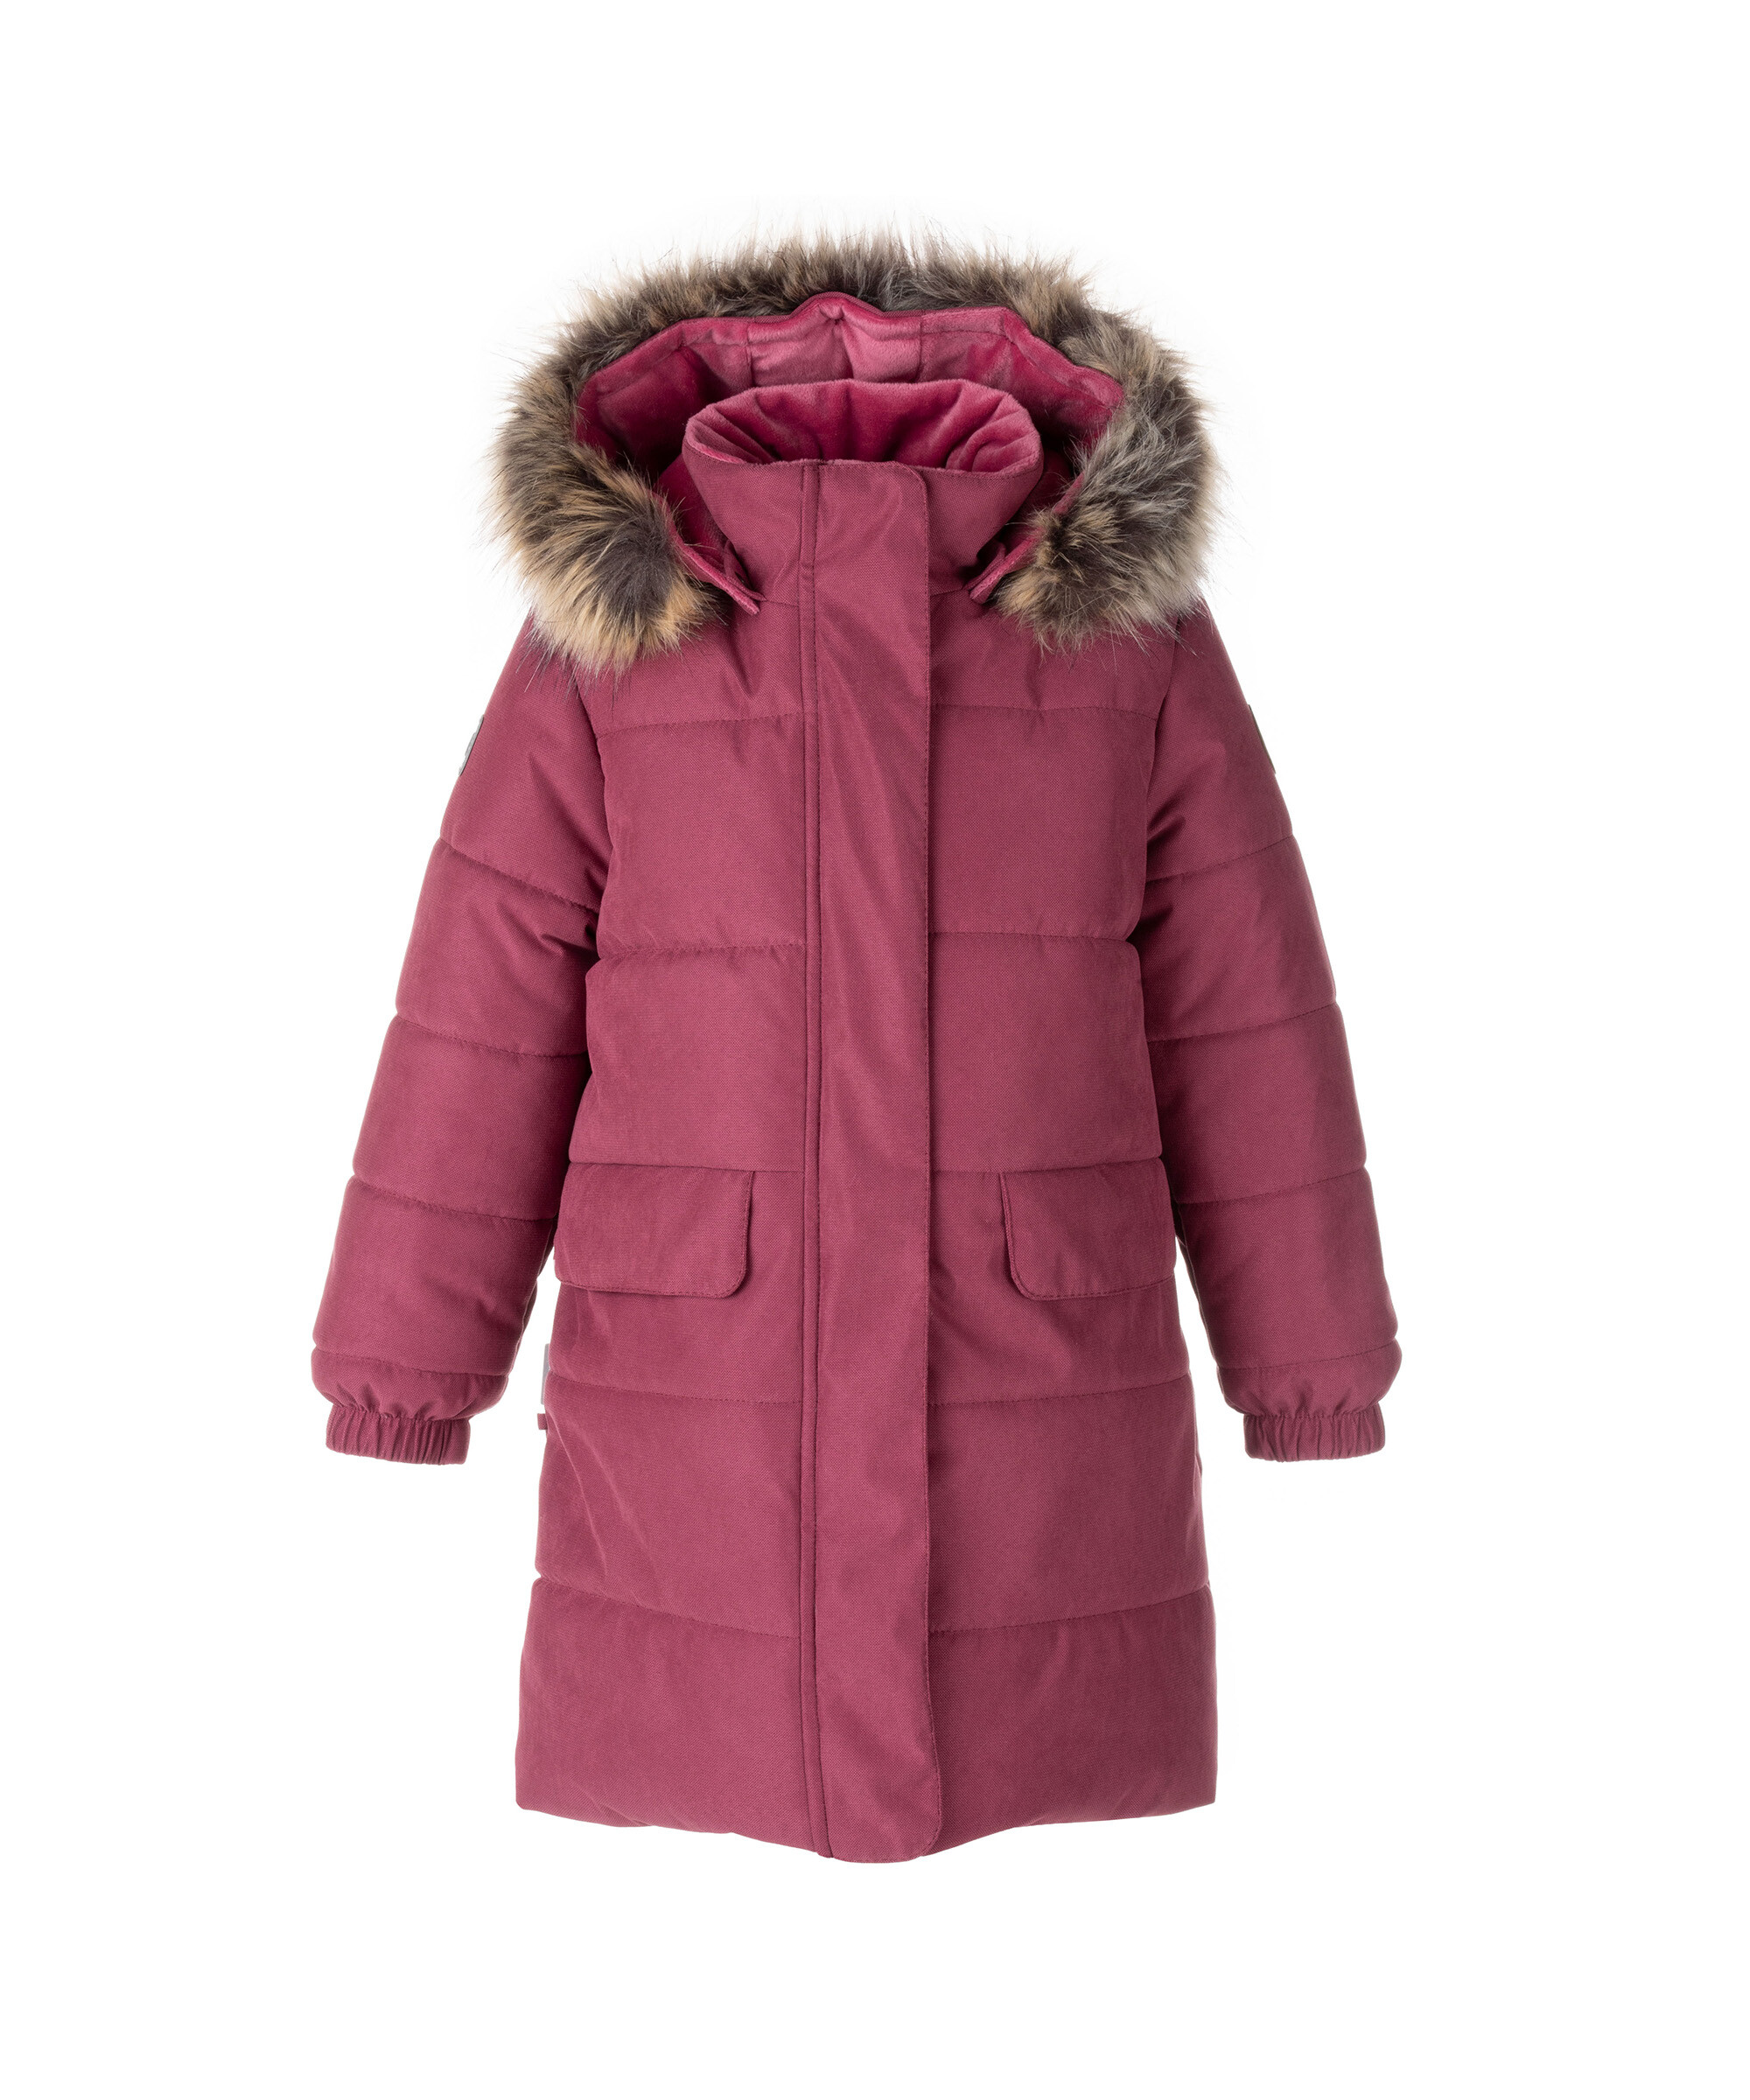 Пальто для девочек KERRY K22833 MC цв. бордовый р. 128